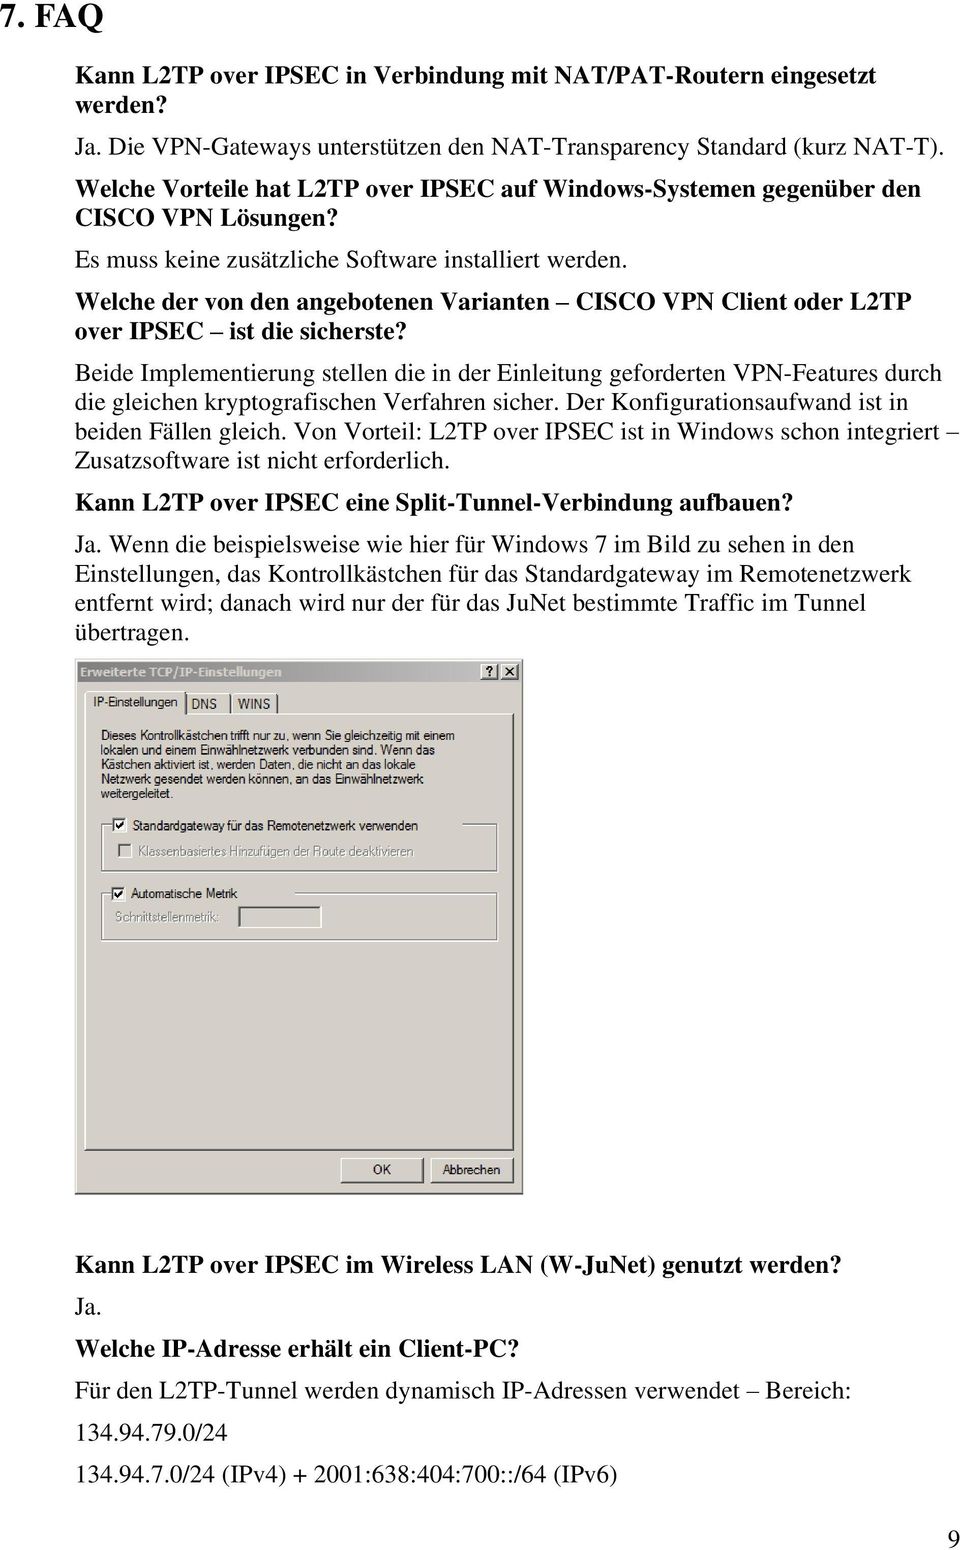 Welche der von den angebotenen Varianten CISCO VPN Client oder L2TP over IPSEC ist die sicherste?